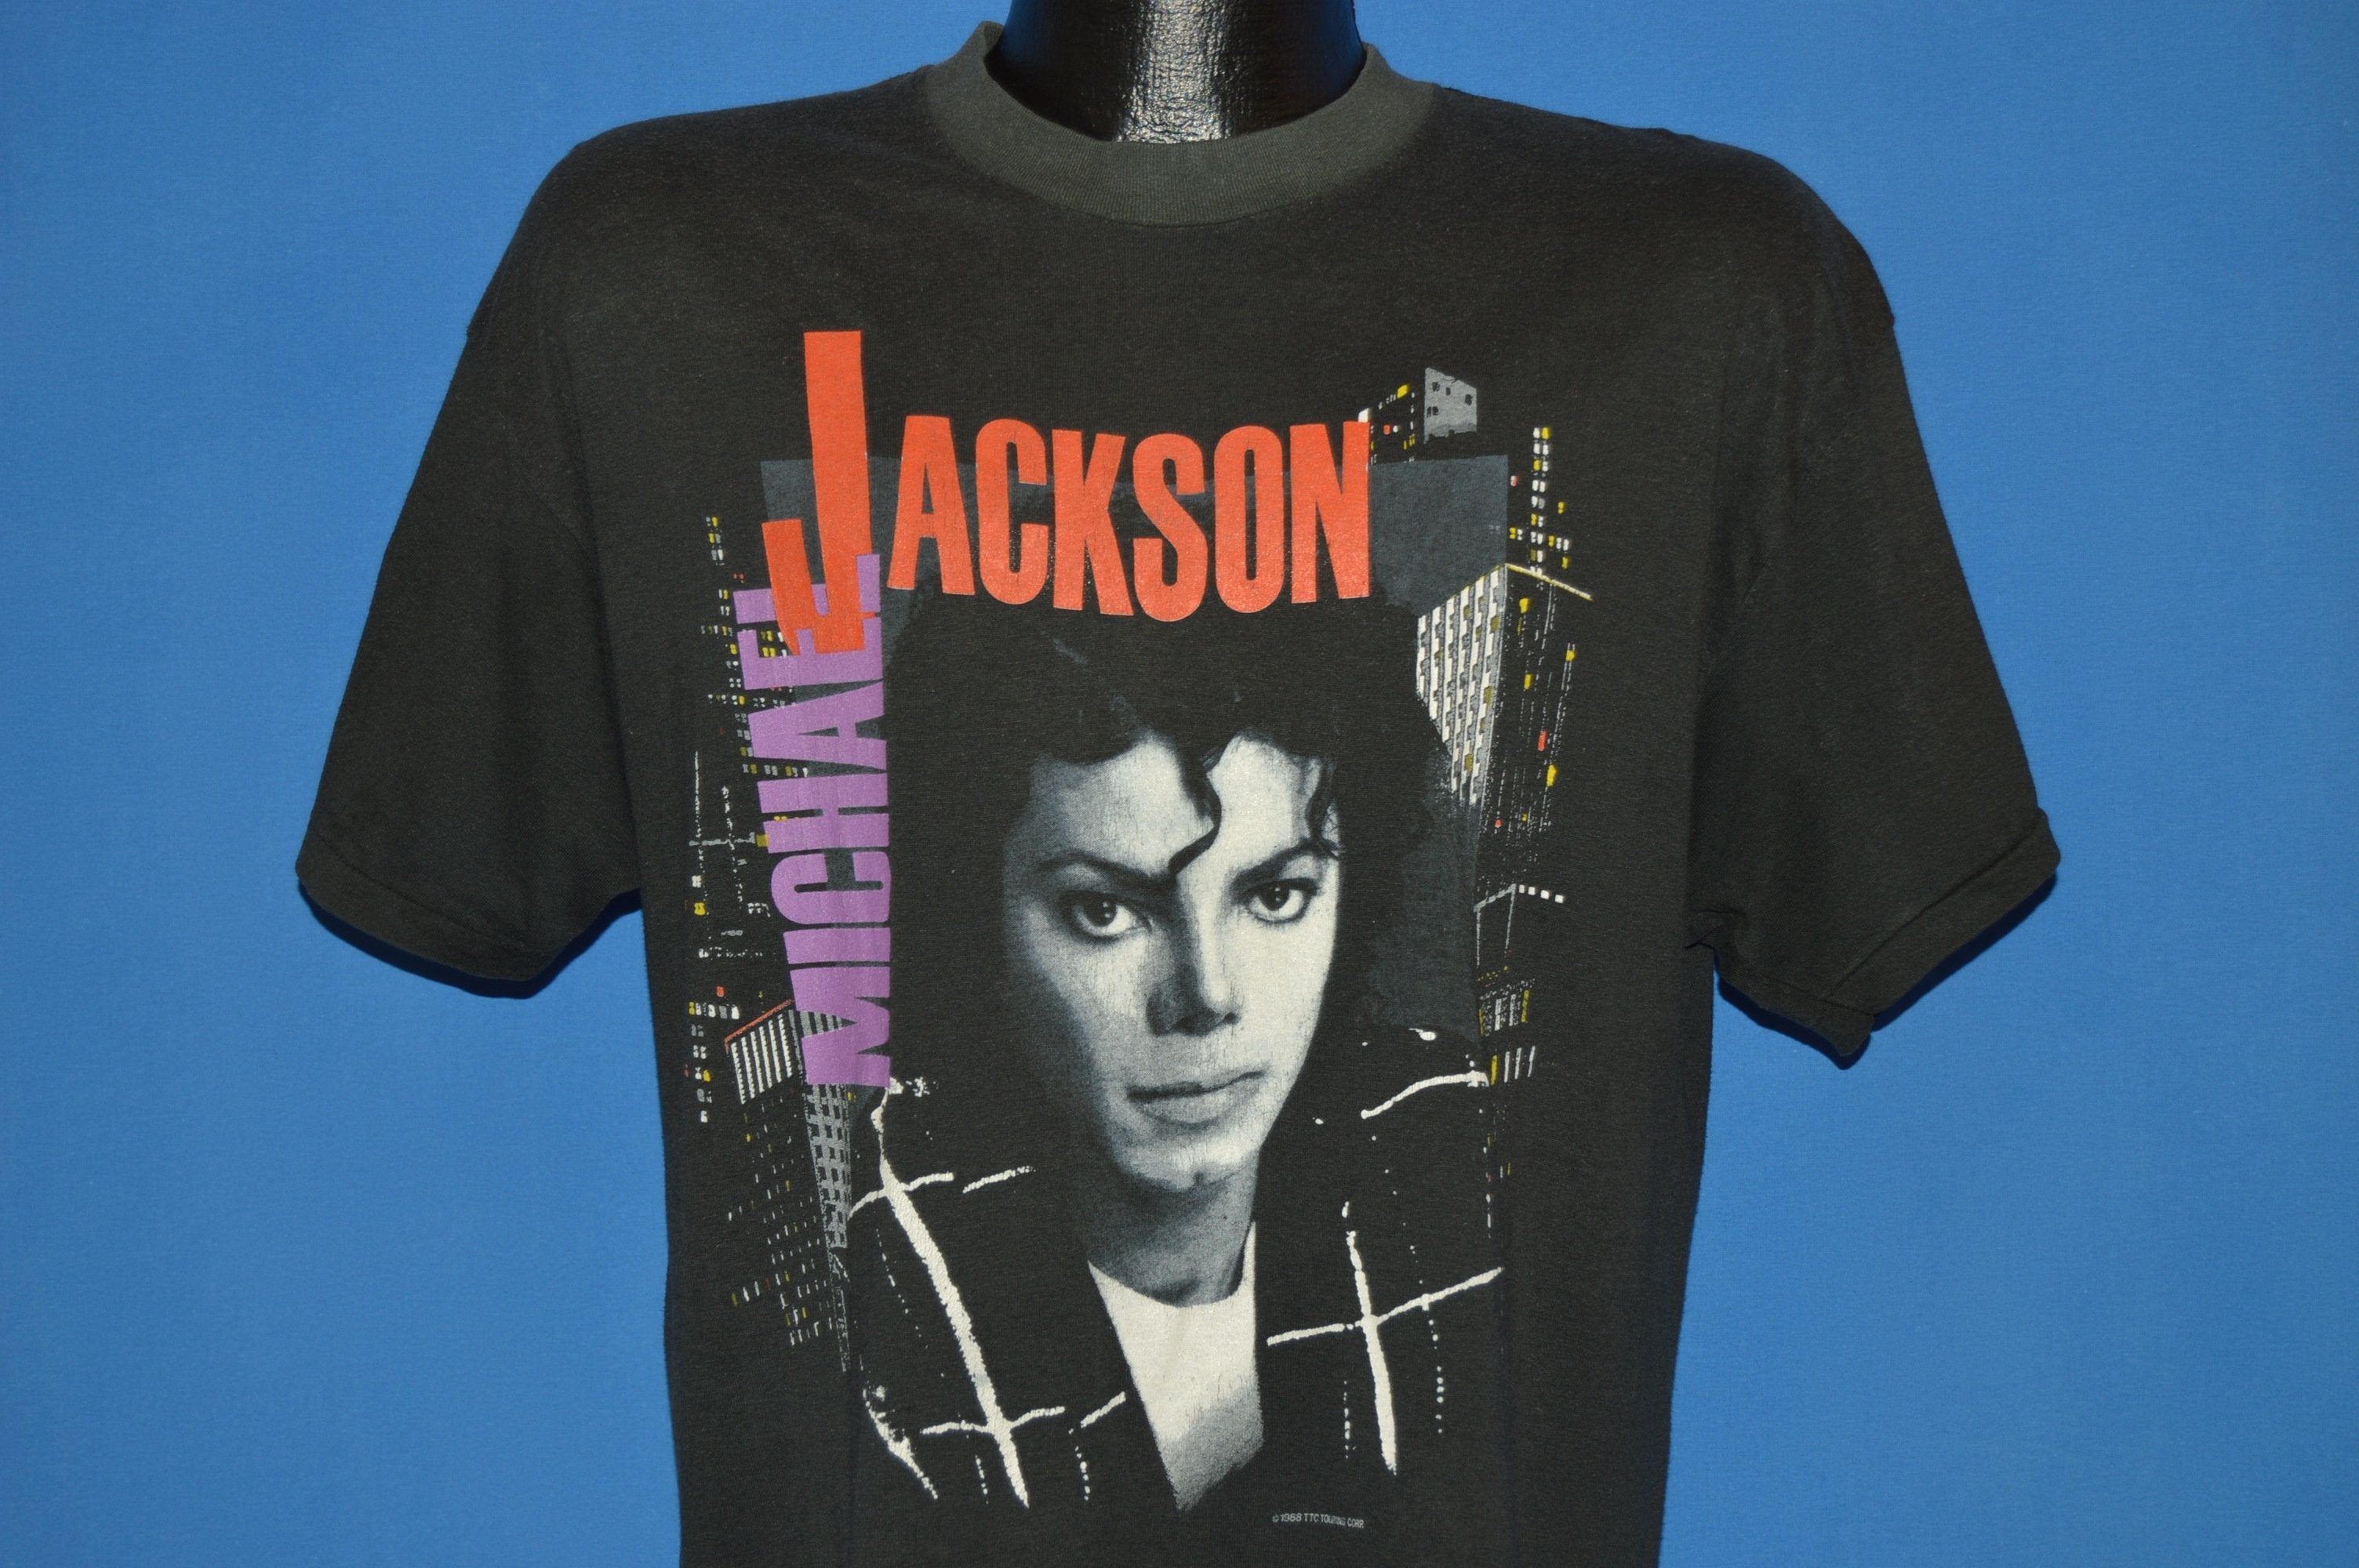 vintage 80s MICHAEL JACKSON DANGEROUS CONCERT T-Shirt LARGE single stitch